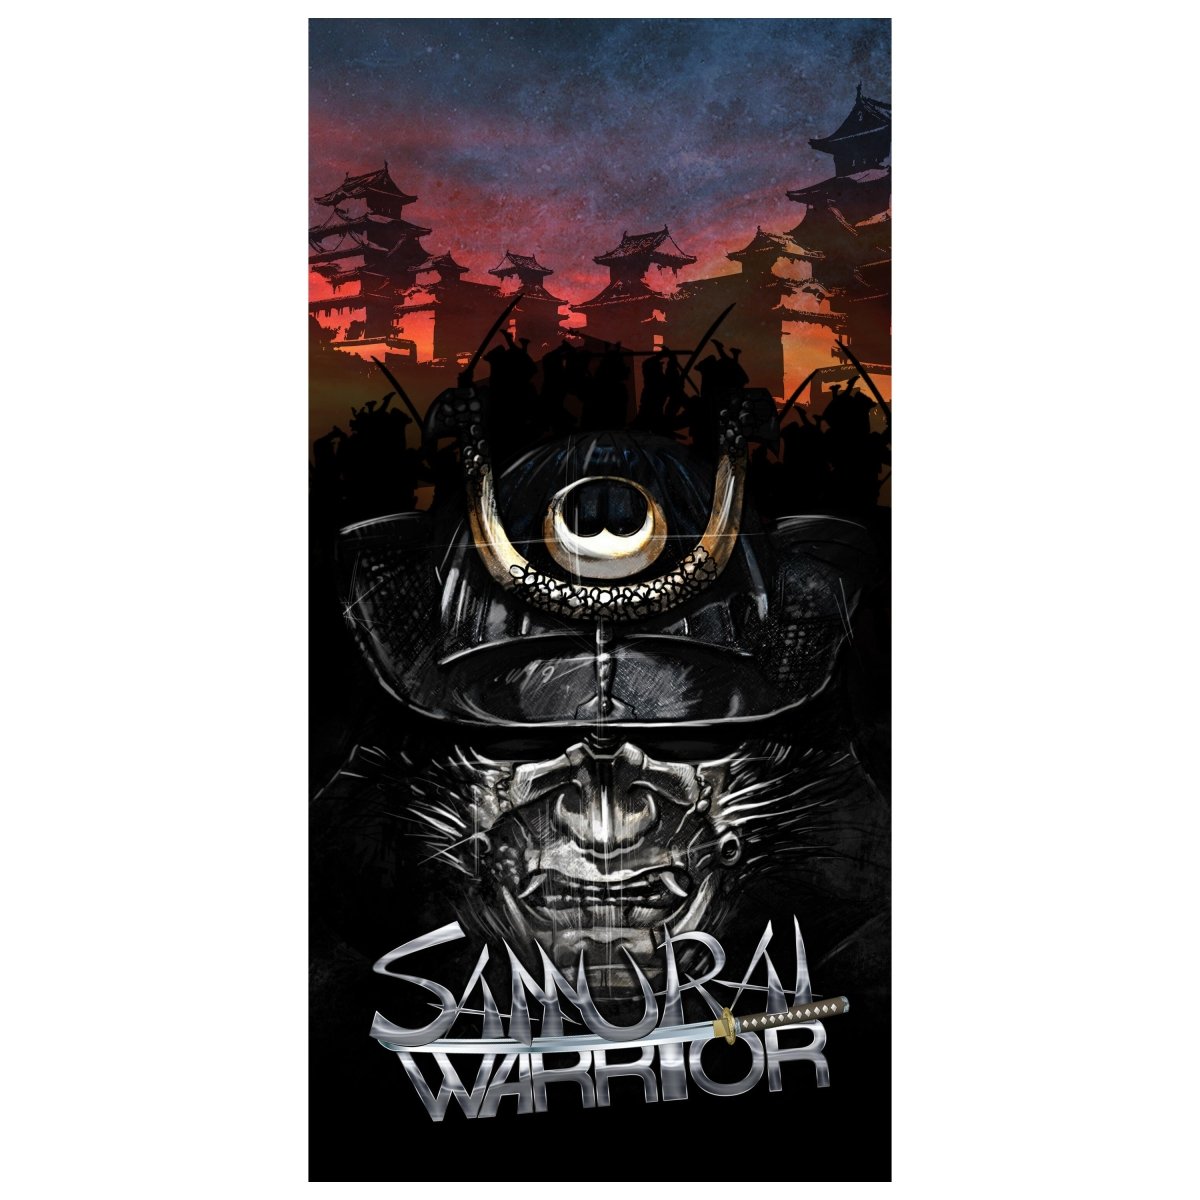 Türtapete Samaurai Warrior M0560 - Bild 2